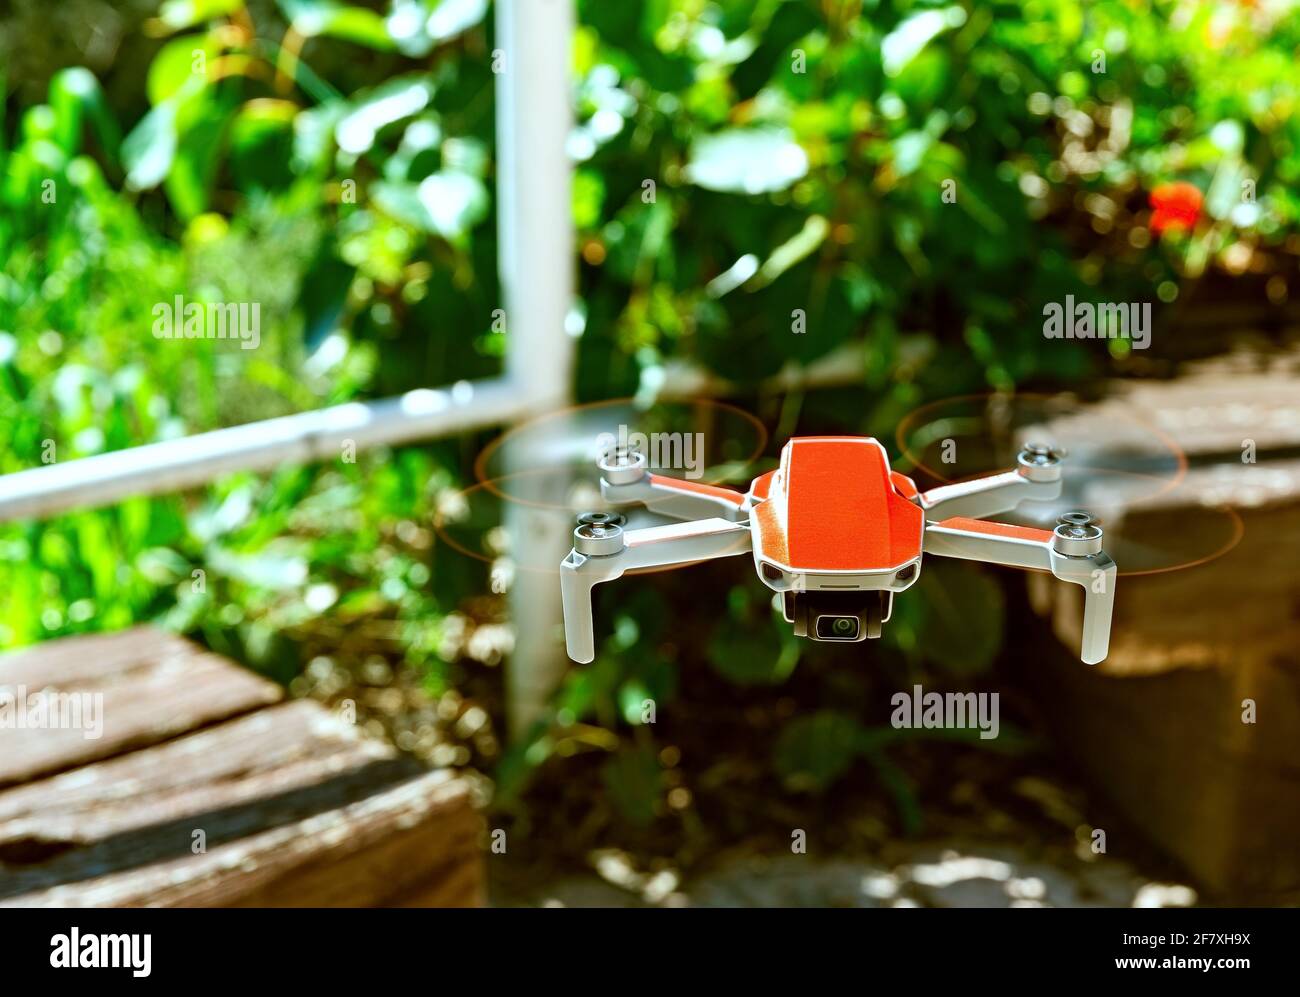 piccolo drone rosso appeso nell'aria in stile vintage Foto Stock